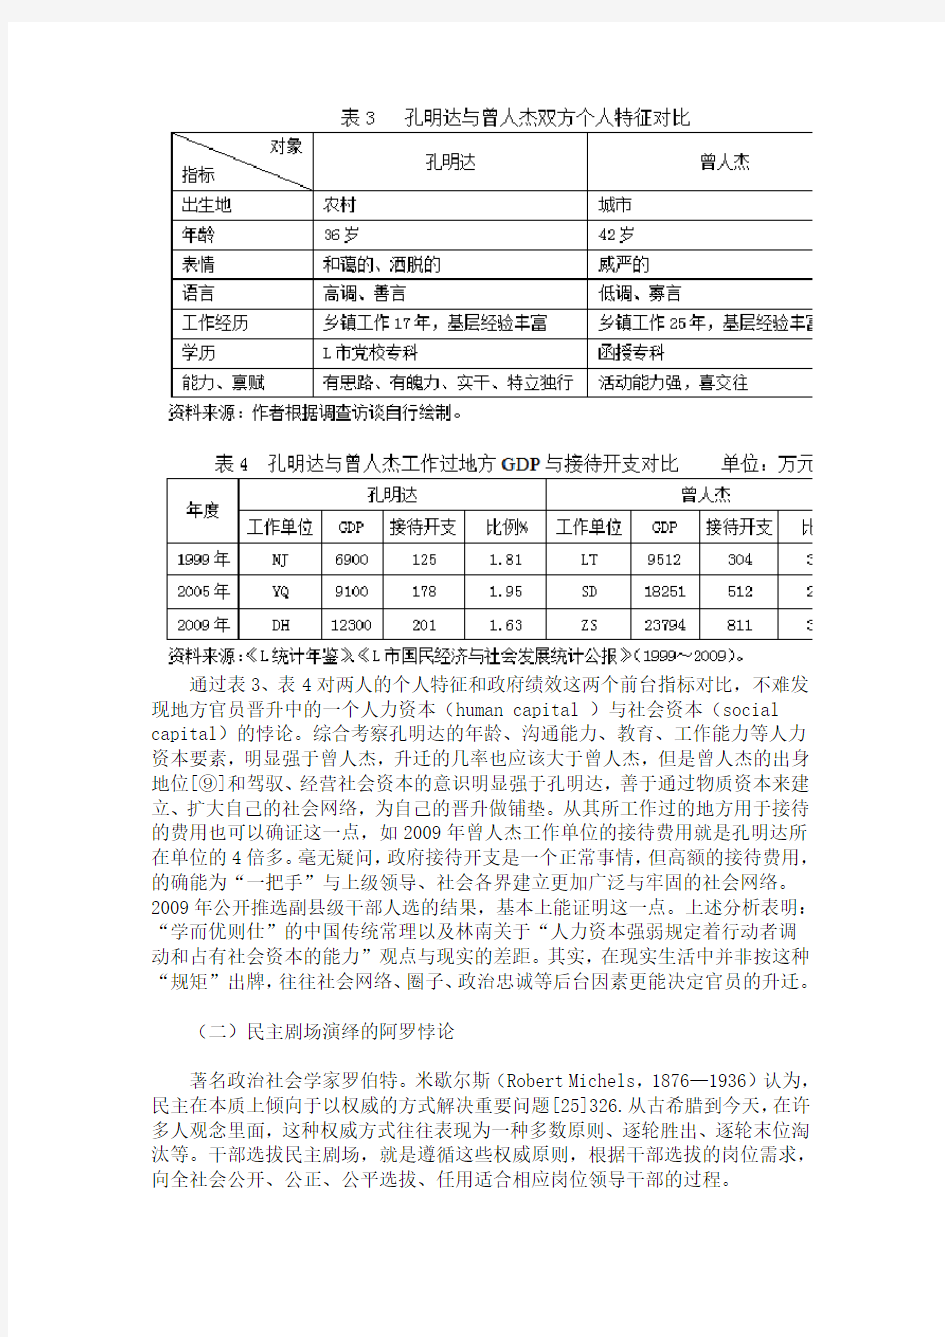 陈潭、刘兴云：锦标赛体制、晋升博弈与地方剧场政治